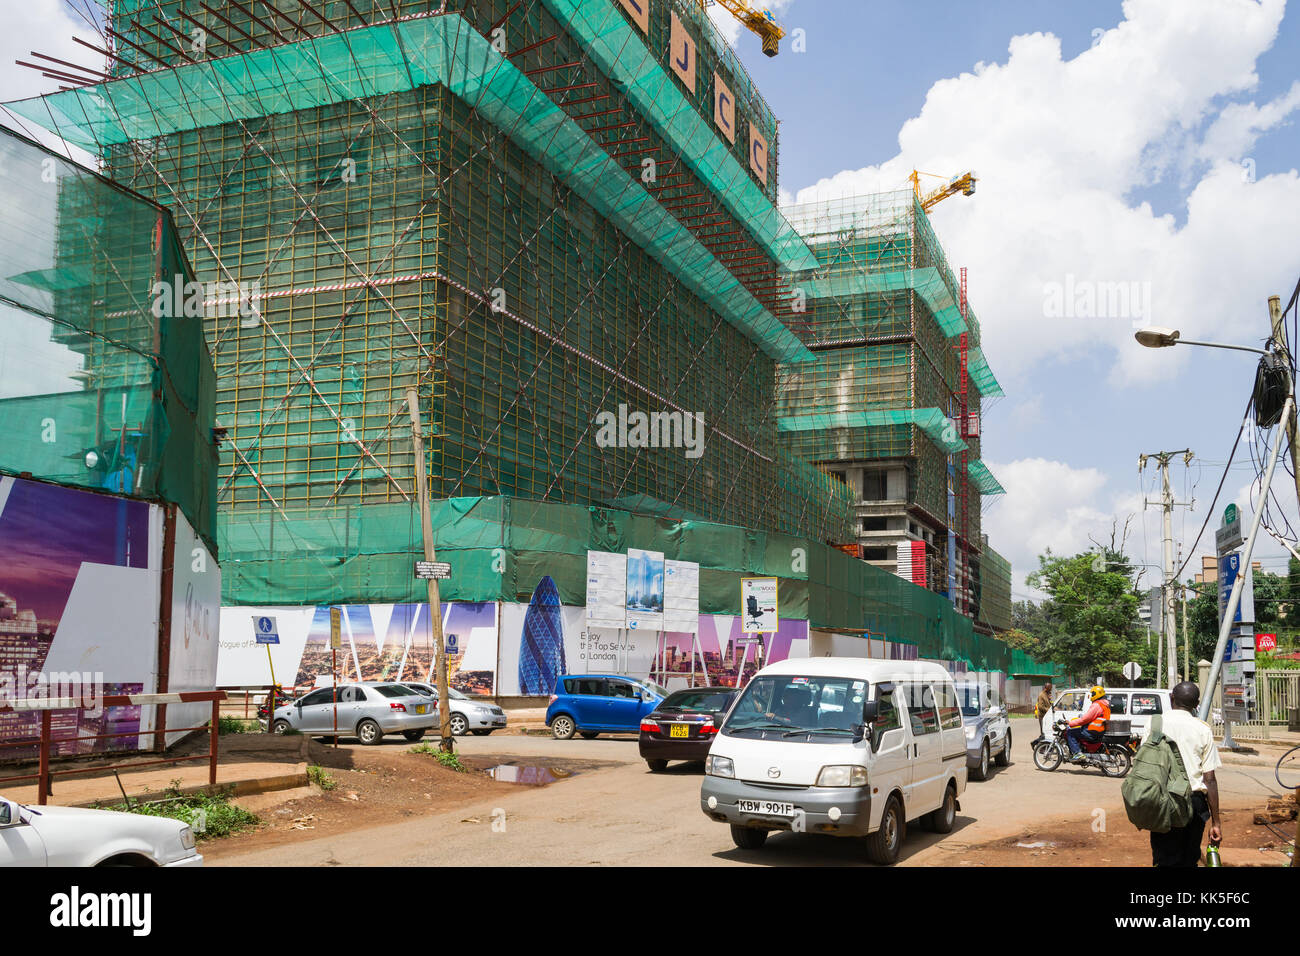 Los edificios están construidos por AVIC International Real Estate de Kenia en el distrito Westlands Chiromo Lane y Westlands Road, Nairobi, Kenia Foto de stock